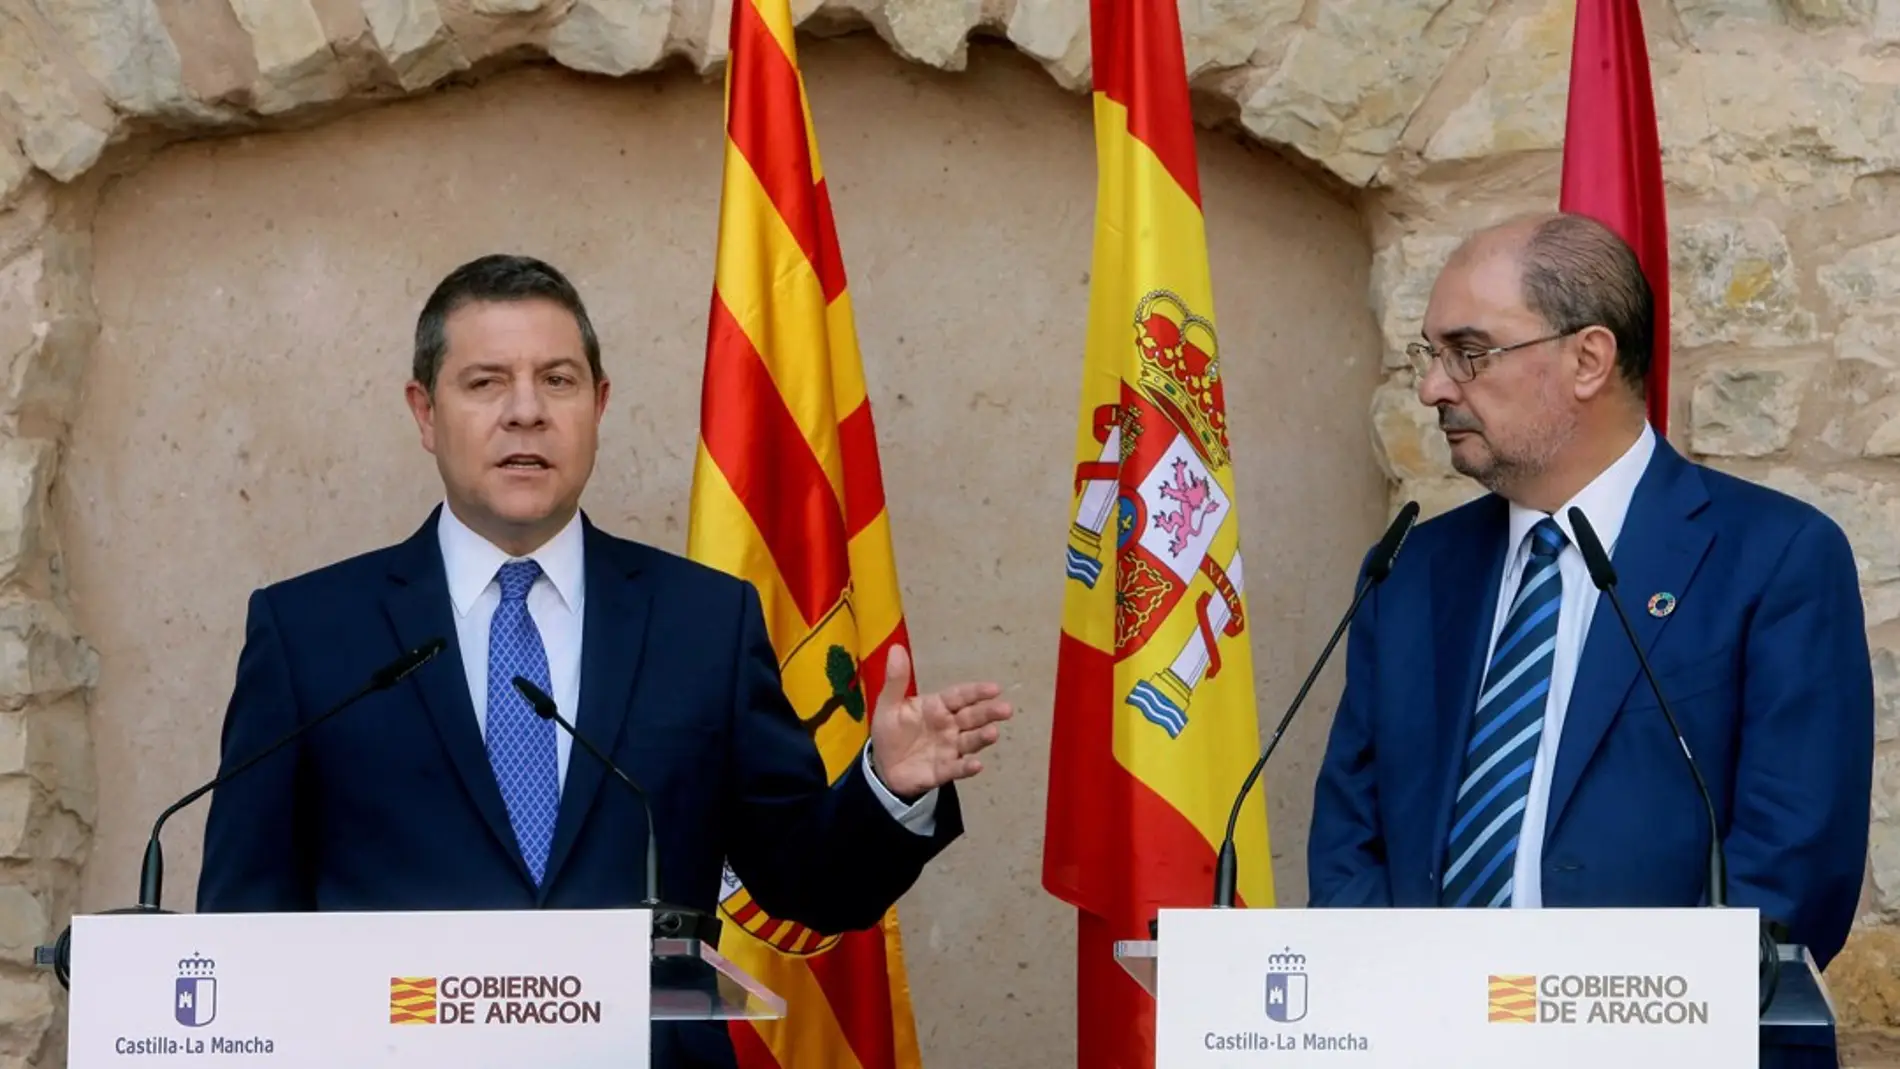 El presidente de Castilla-La Mancha, Emiliano García-Page, y el presidente de Aragón, Javier Lambán, en una imagen de archivo.